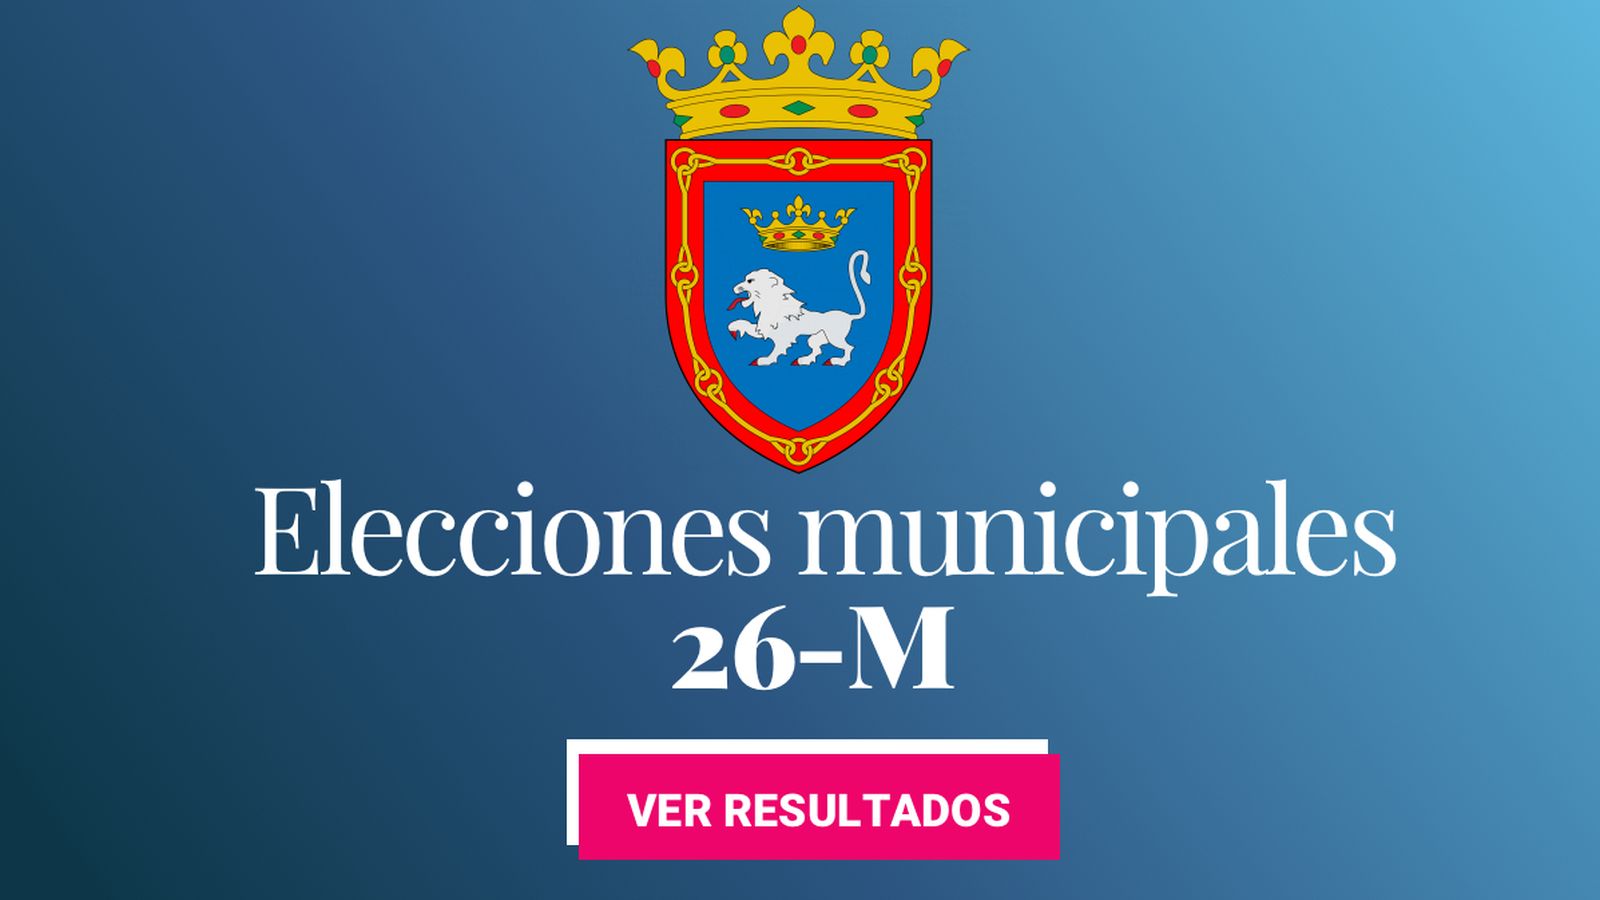 Foto: Elecciones municipales 2019 en Pamplona. (C.C./EC)